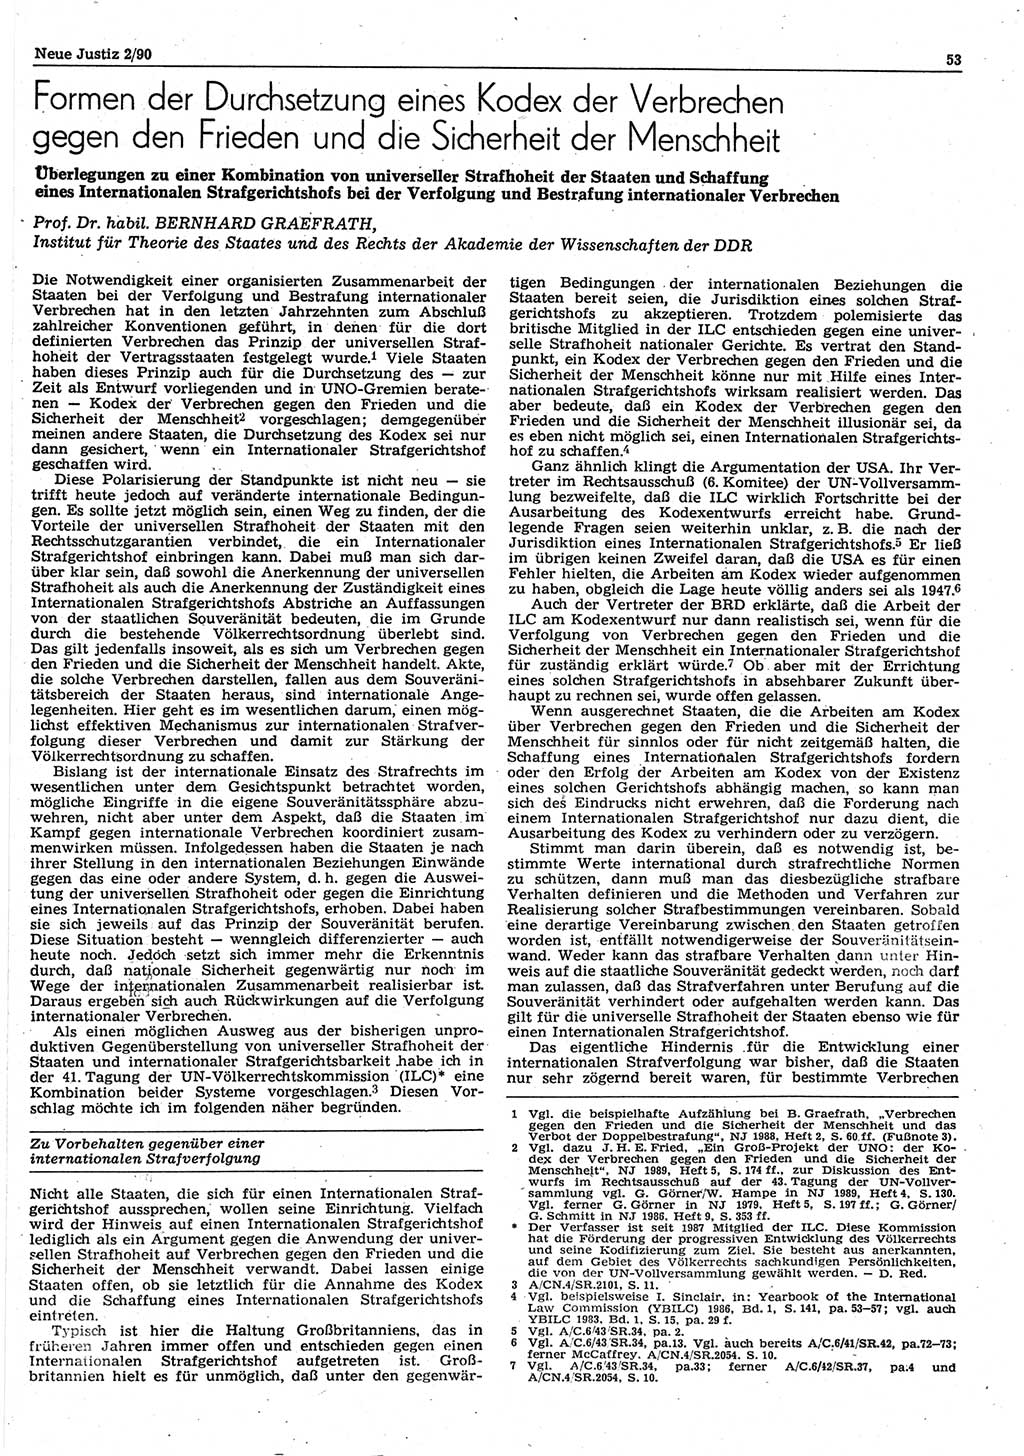 Neue Justiz (NJ), Zeitschrift für Rechtsetzung und Rechtsanwendung [Deutsche Demokratische Republik (DDR)], 44. Jahrgang 1990, Seite 53 (NJ DDR 1990, S. 53)